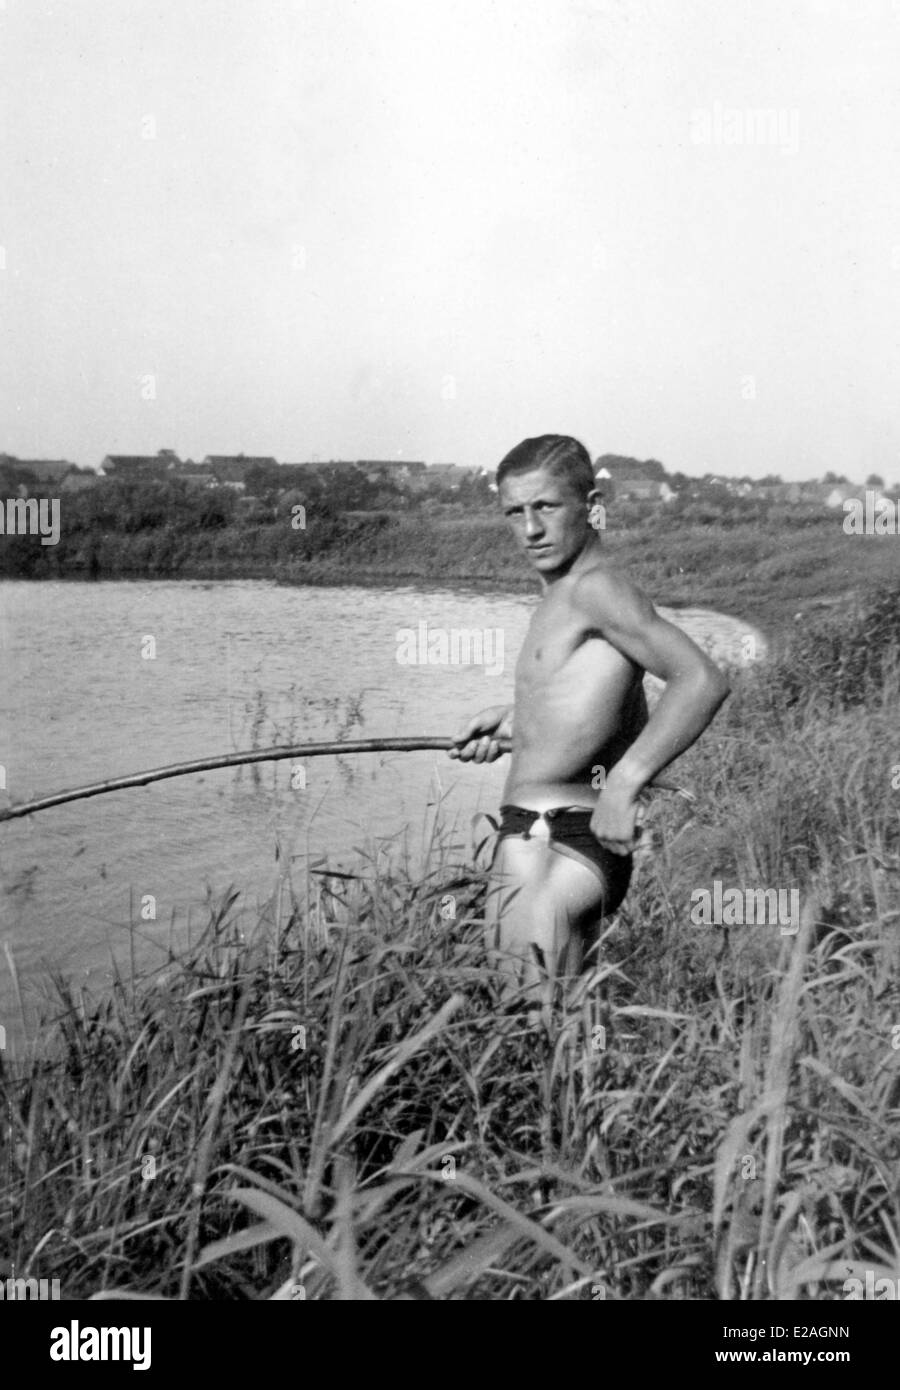 Youth Camp presso il fiume Oder nel 1937 - giovane pesca. Foto Stock